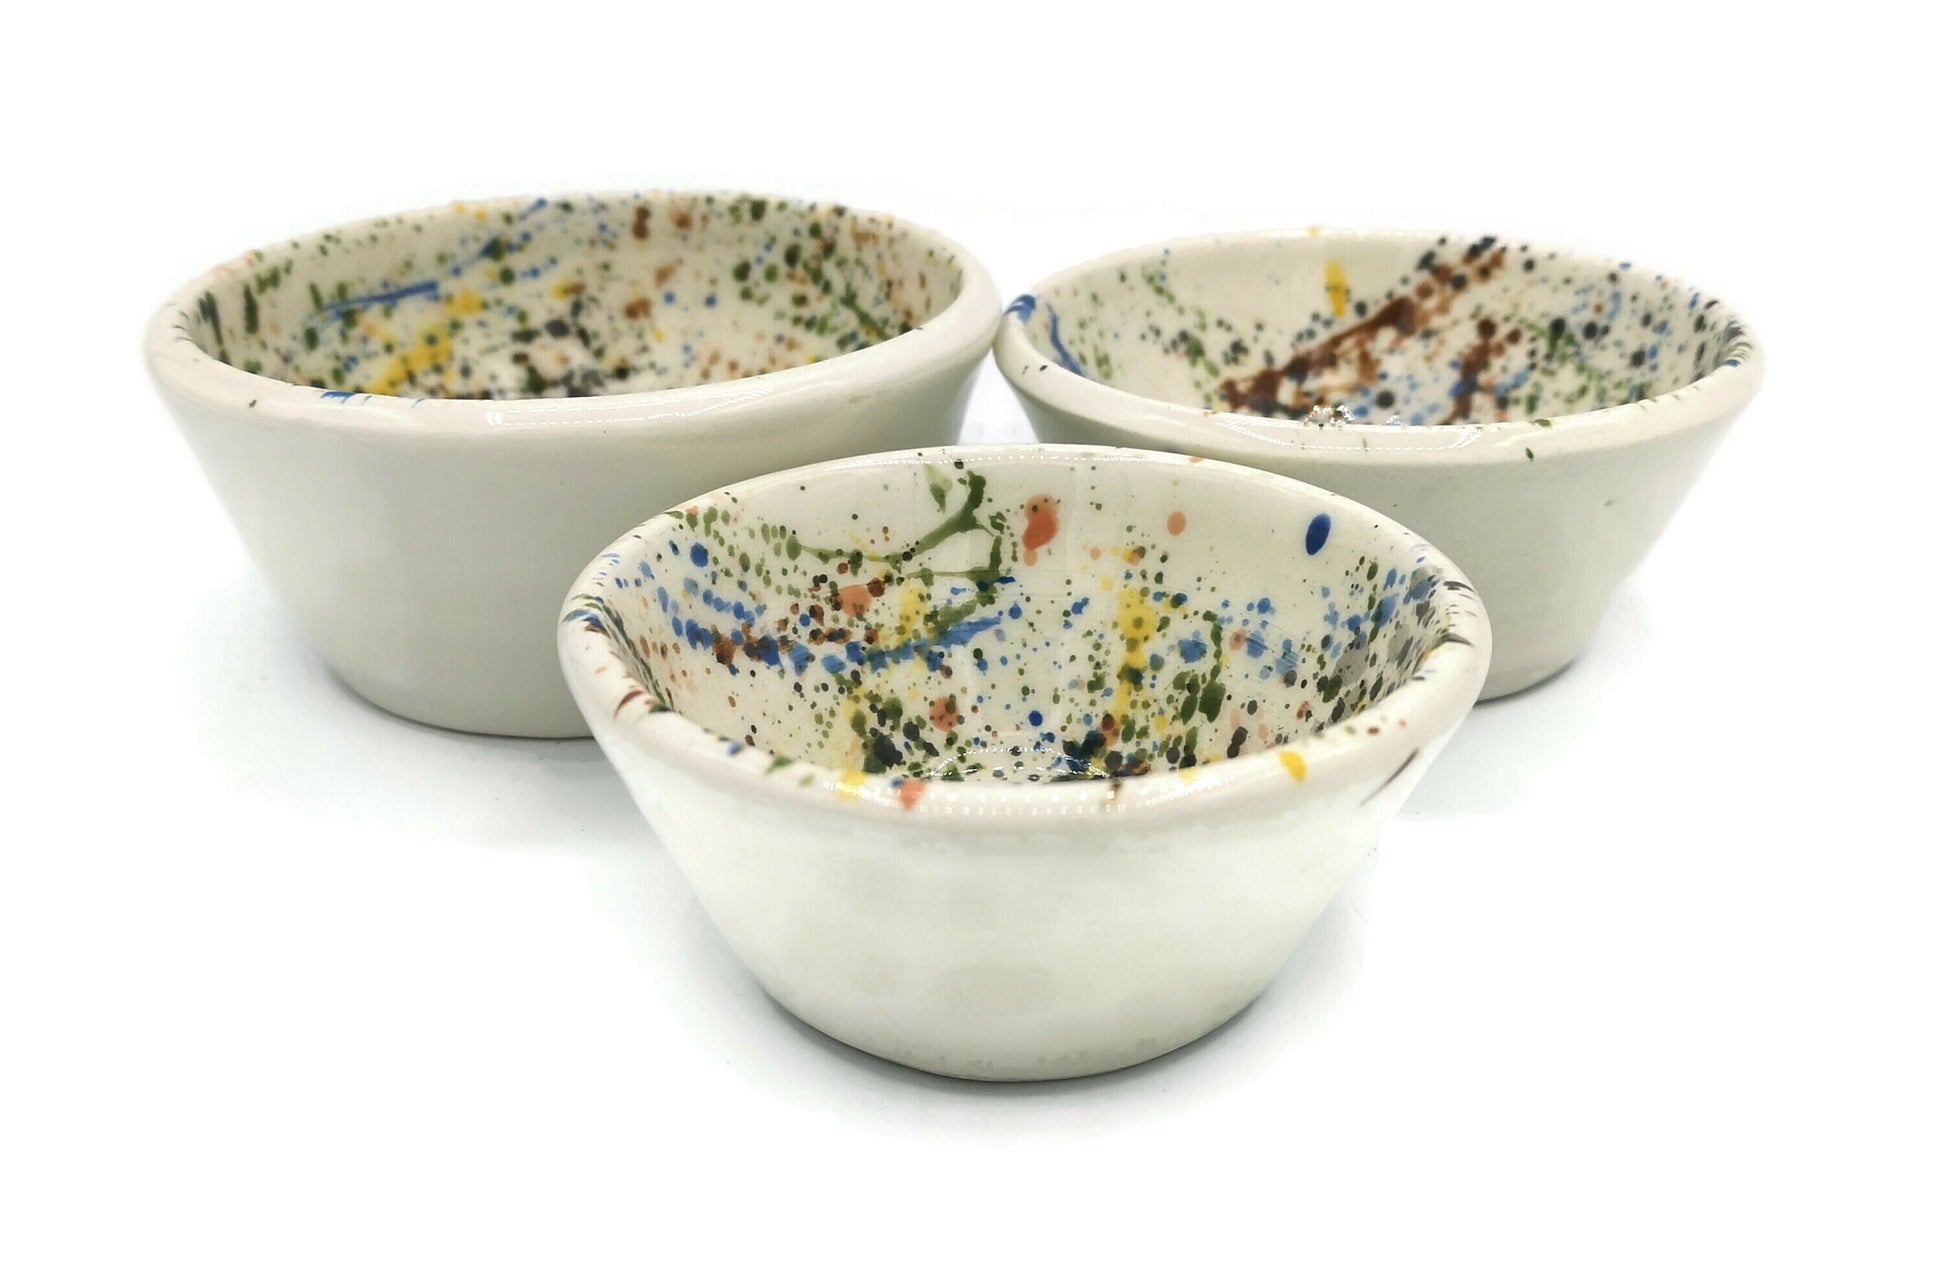 Handmade Ceramic Bowl Set Of 3, Dining Room Decor Housewarming Gift First Home, Decorative Bowl, Serving Bowl Ready To Ship - Ceramica Ana Rafael